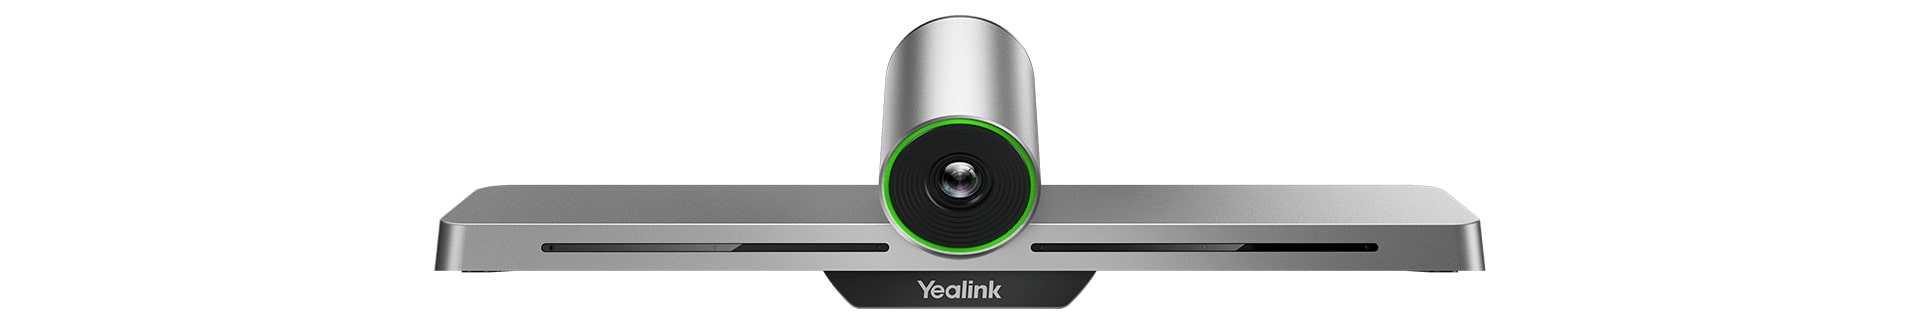 Yealink VC200 терминал видеоконференцсвязи для небольших переговорных комнат 